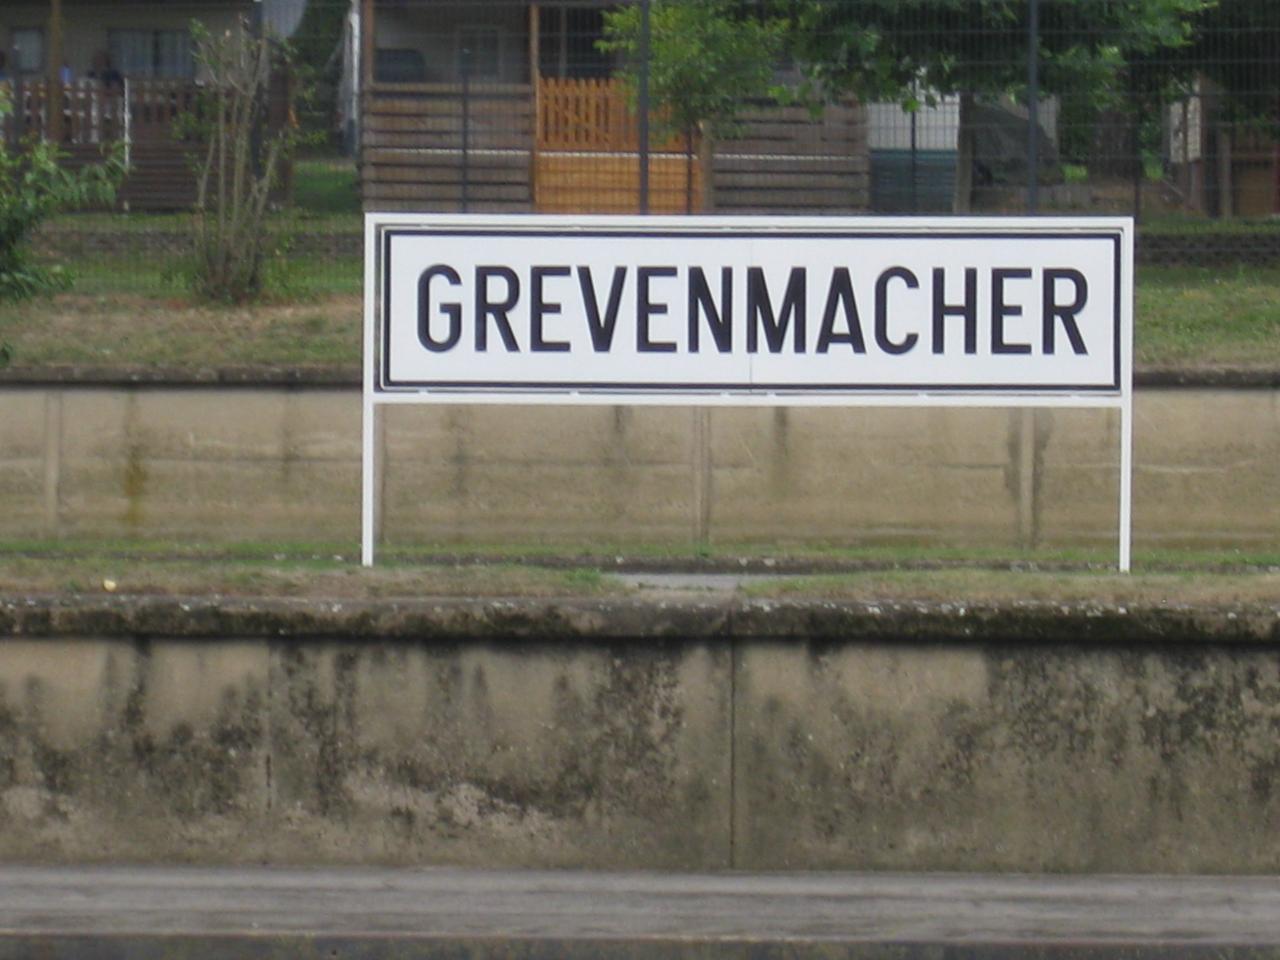 GREVENMACHER